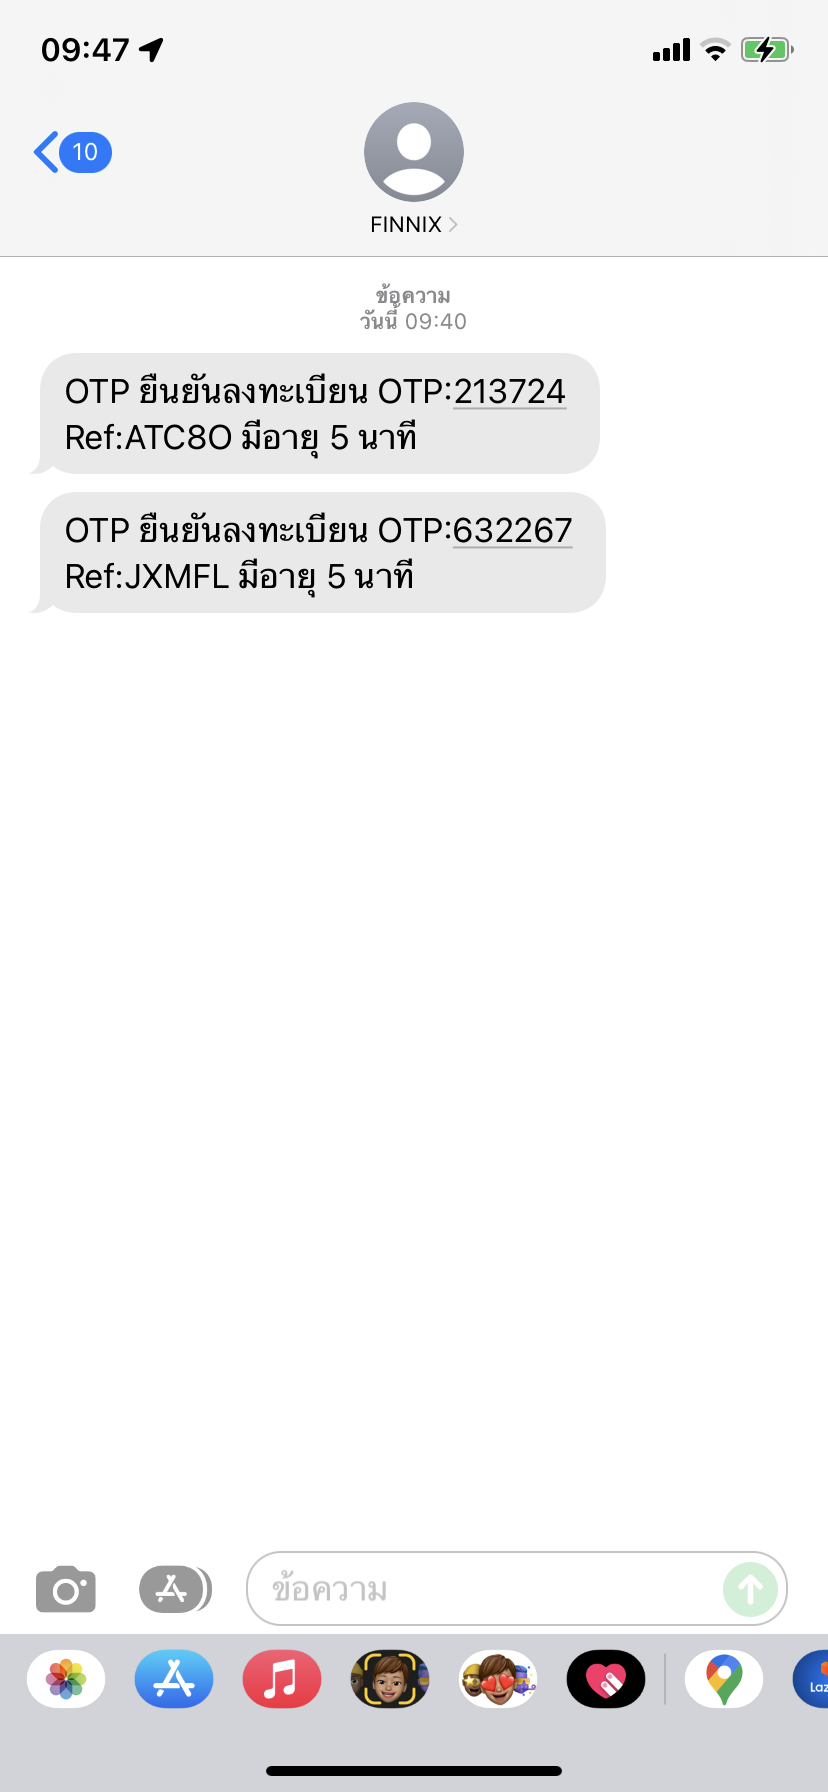 อยู่ดีๆมีรหัส Otp ส่งมาให้ที่มือถือ Truemoveh  จะเช็คยังไงครับว่าใครกำลังจะแอบอ้างลอกอินบัญชีผม - Pantip